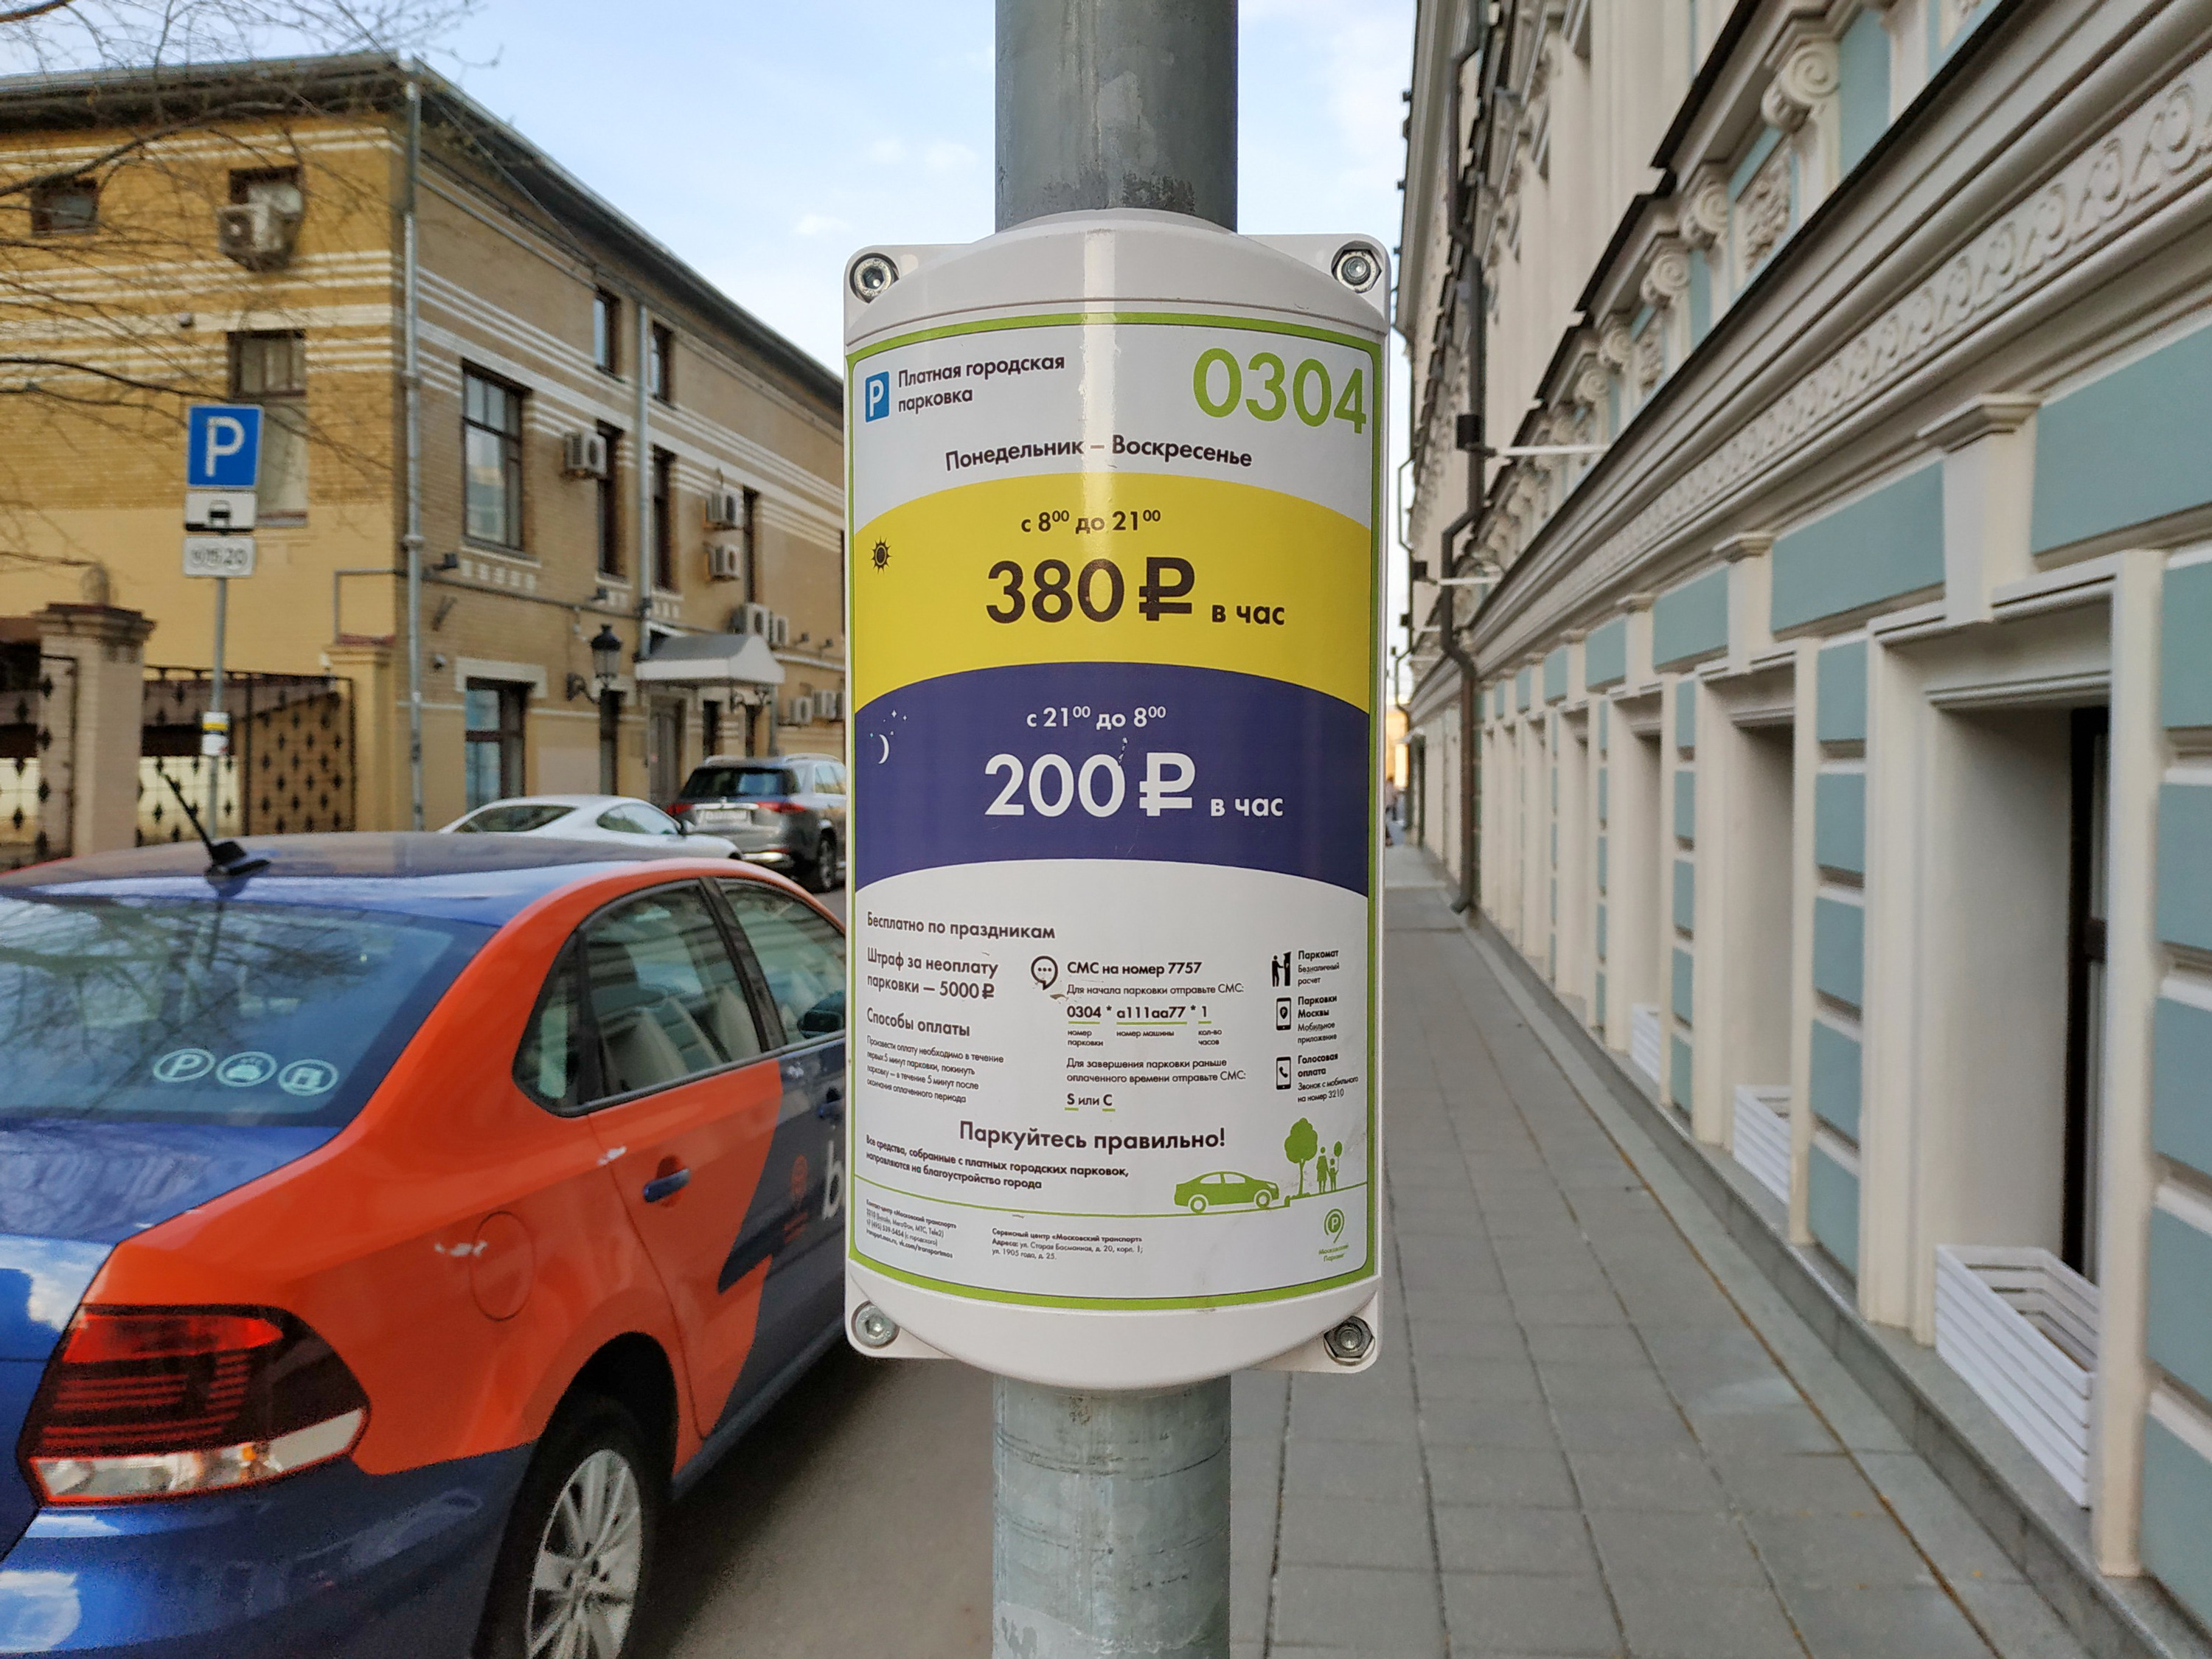 На улицах в центре Москвы стоимость парковки достигает 380 рублей в час. Для машин каршеринга она бесплатна